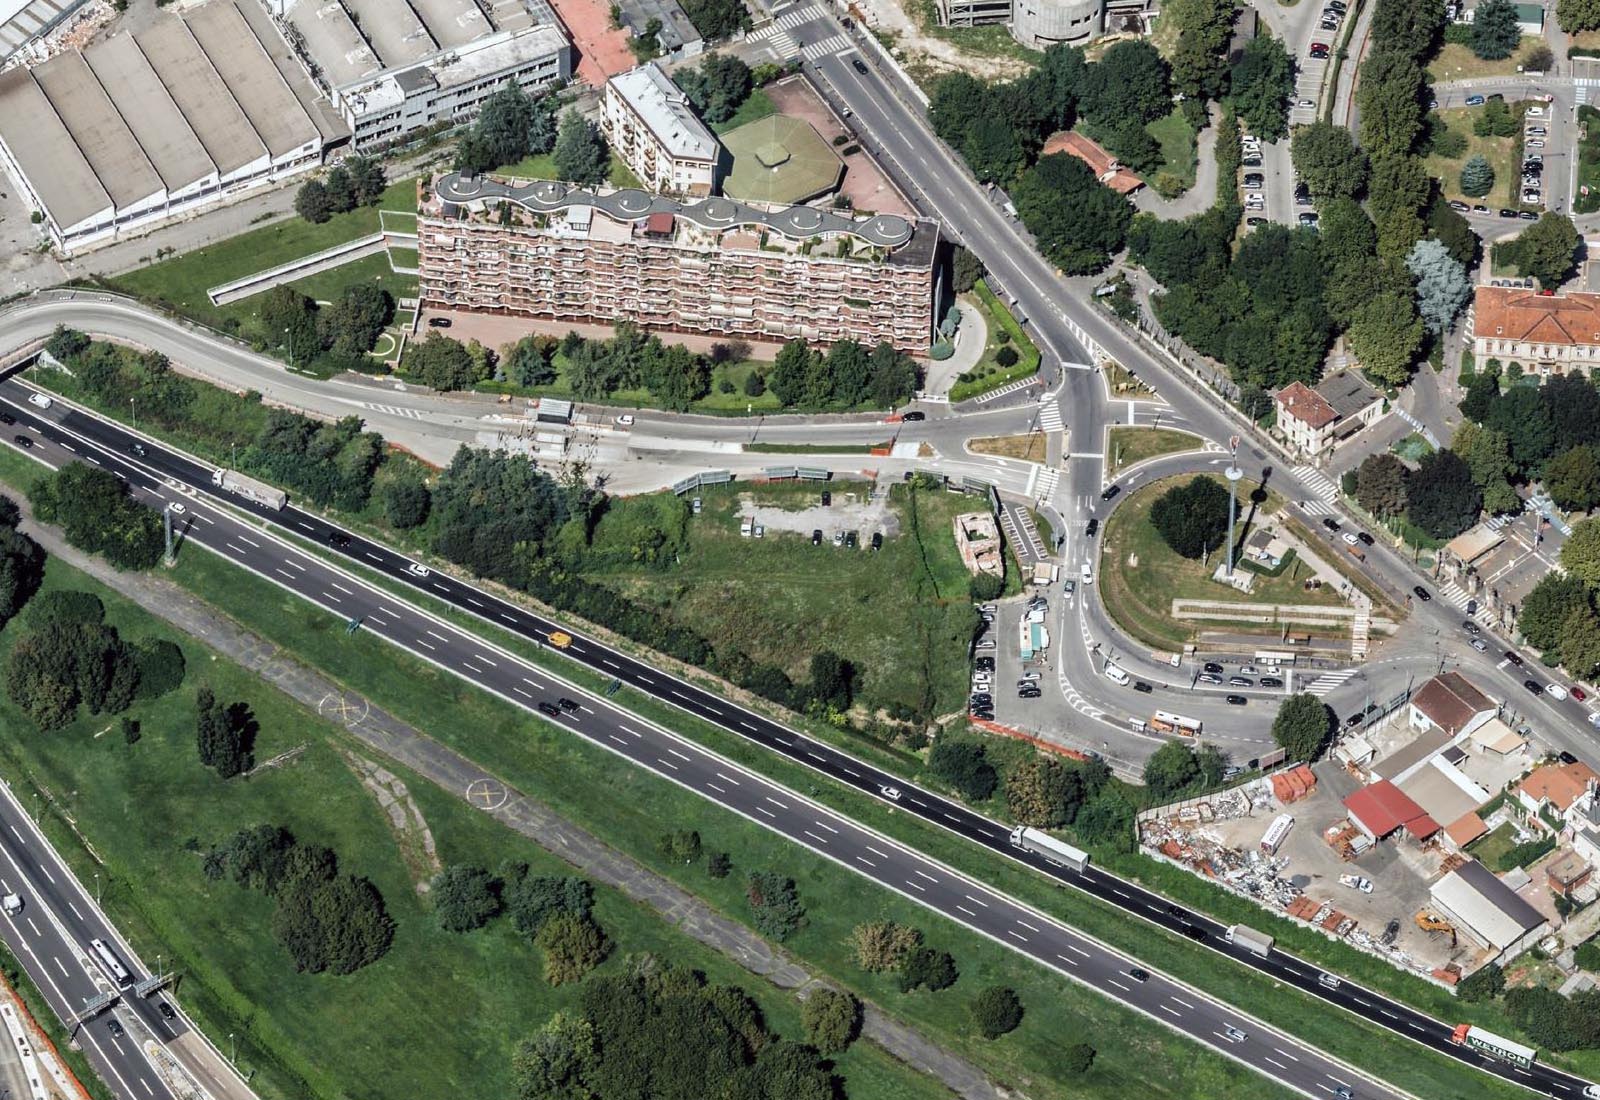 Autolavaggio e parcheggio pubblico in via Cristina Belgioioso a Milano - Vista aerea dell'area